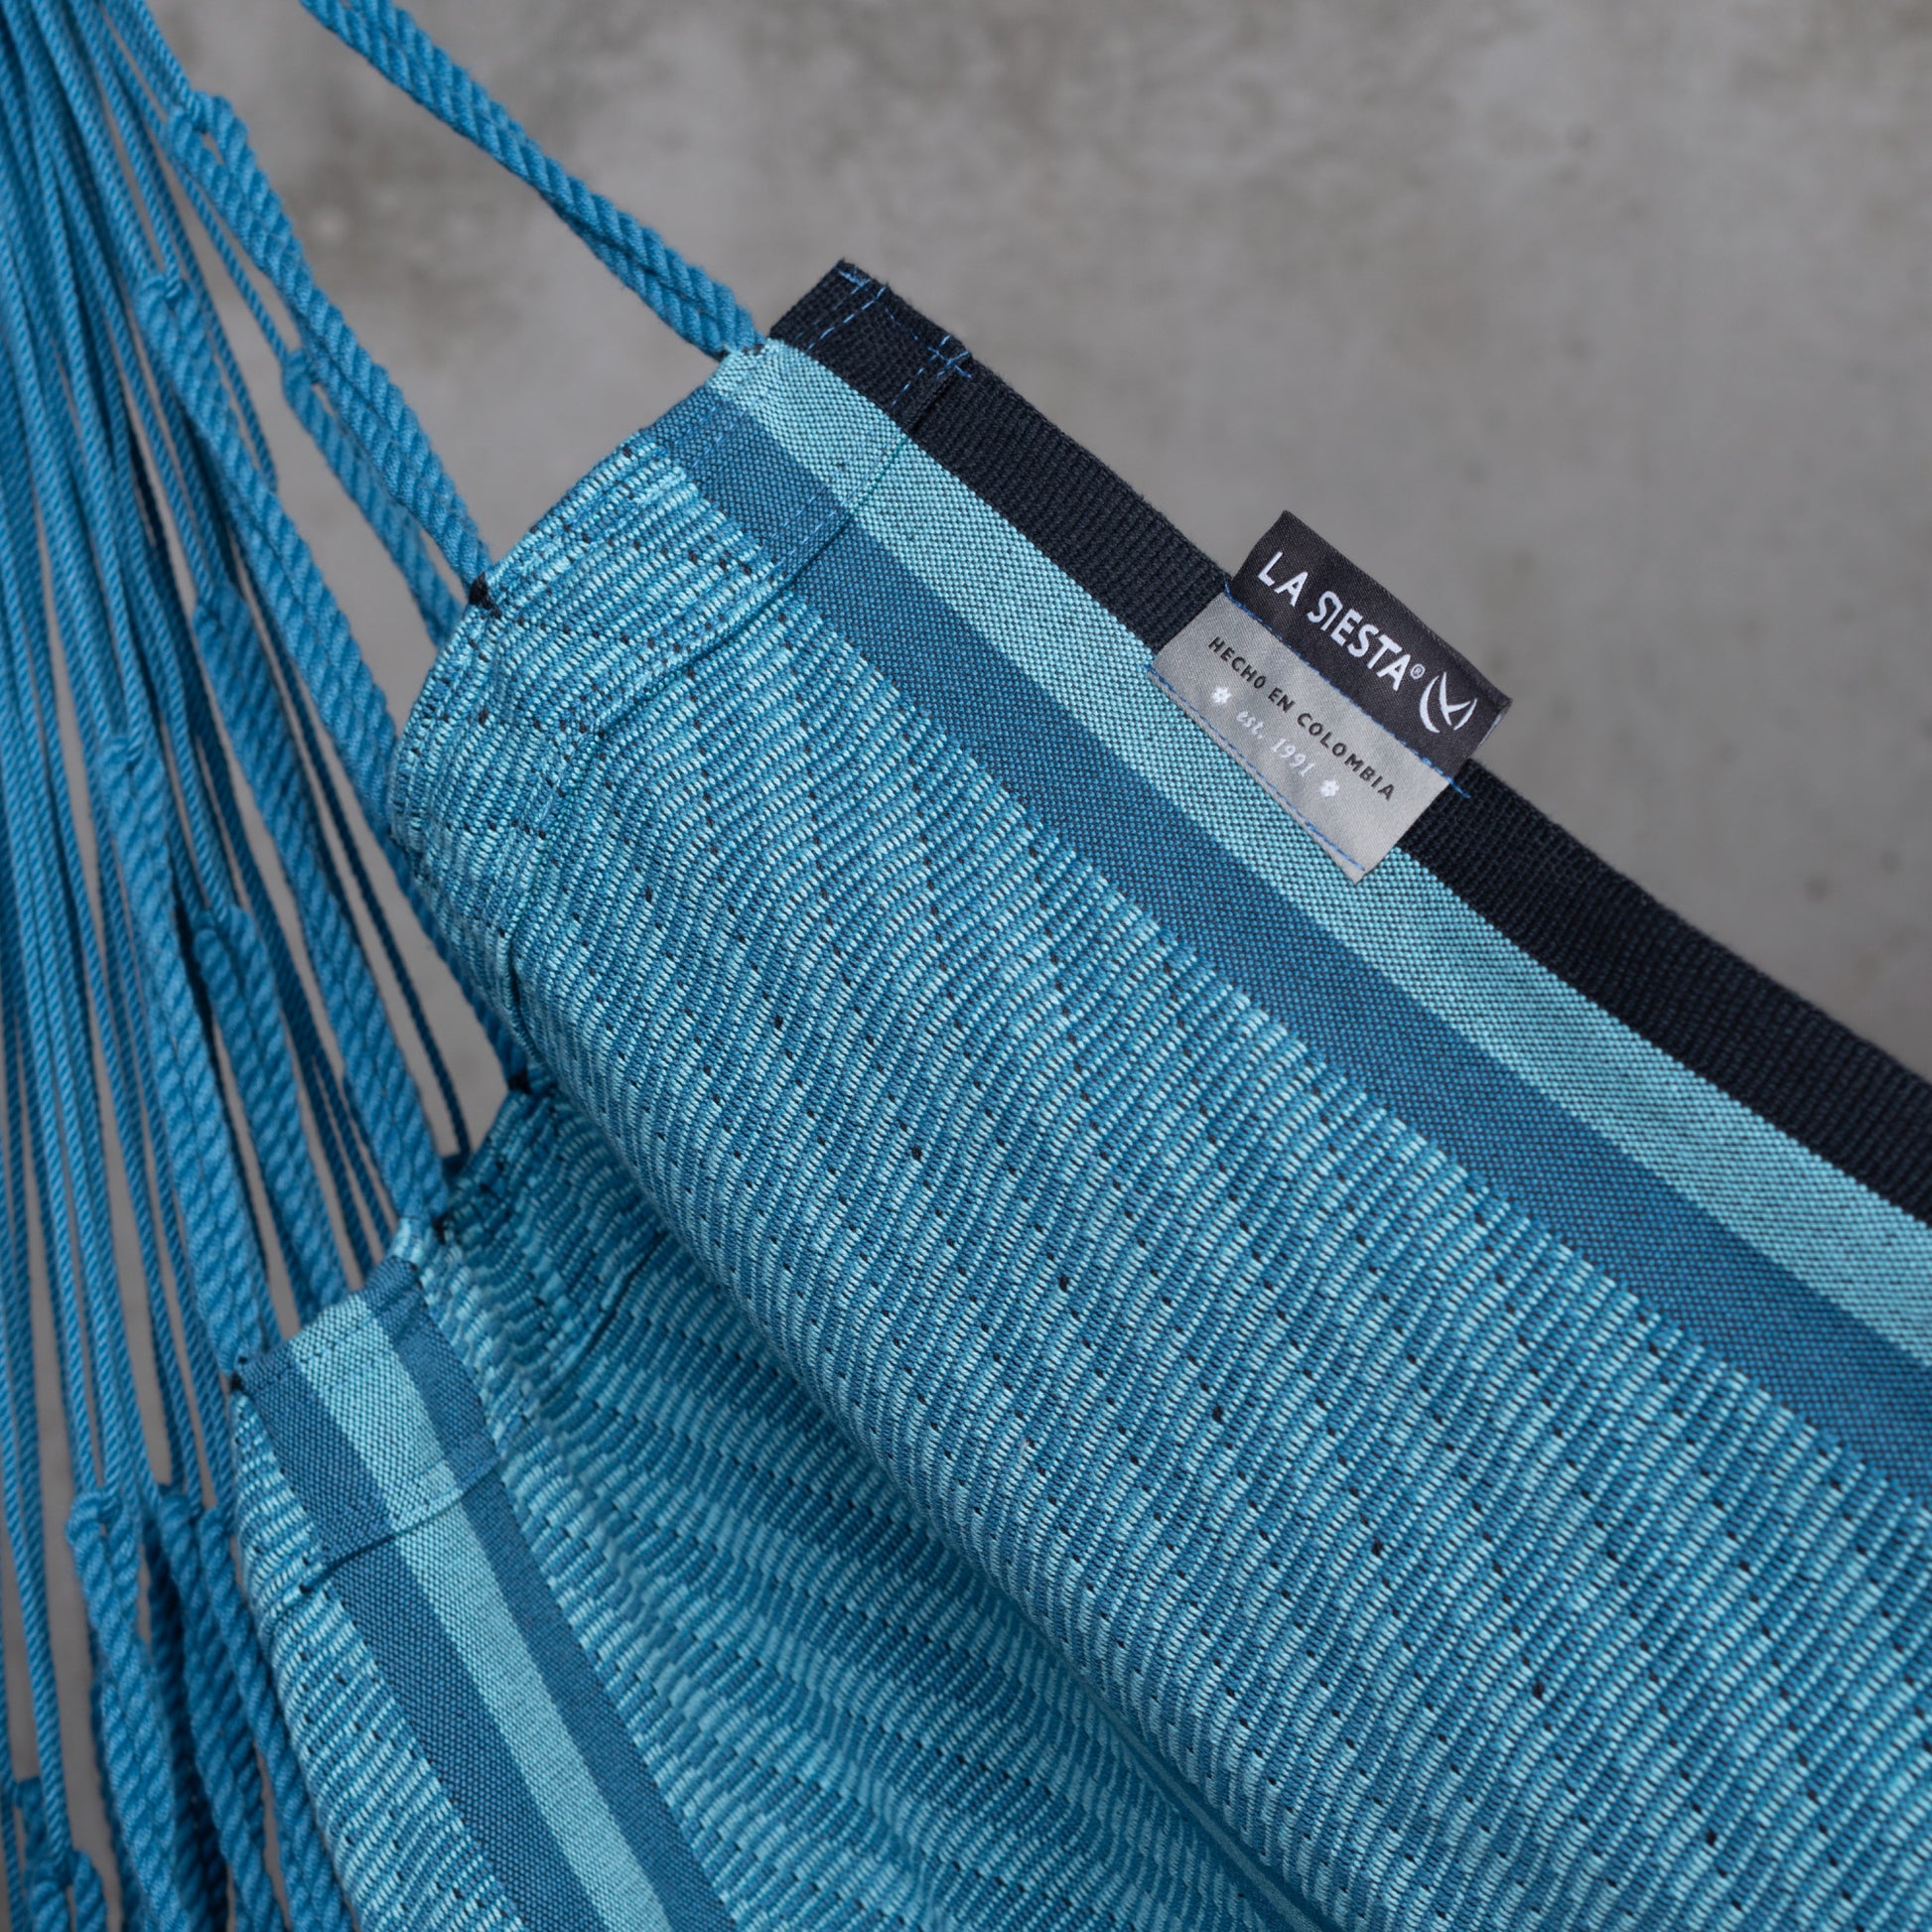 Habana Blue Zebra - Comfort hængekøjestol i økologisk bomuld